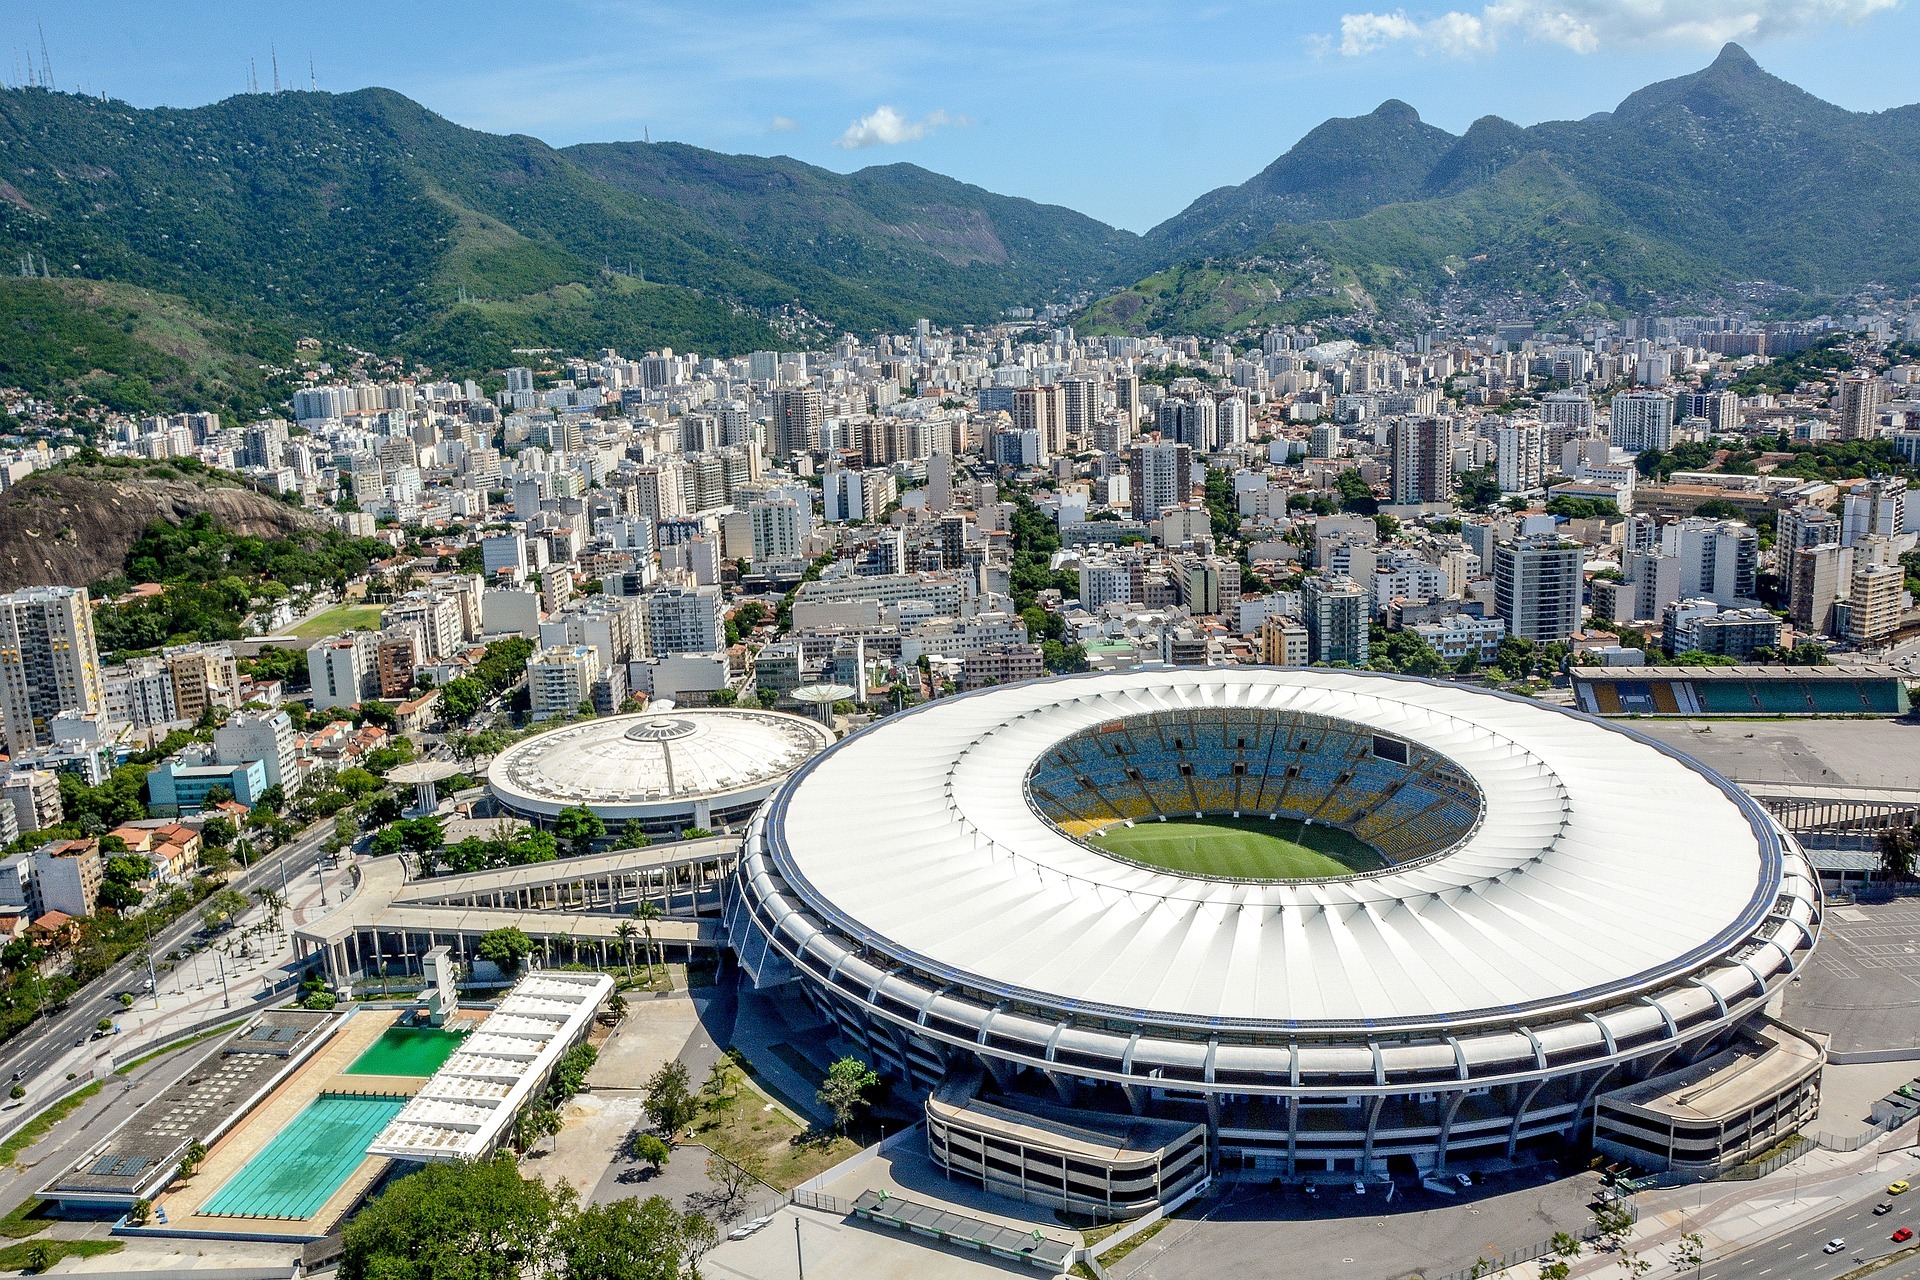 Existem muitos times de futebol espalhados pelo Brasil, assim como há muitos estádios. Confira qual é o maior estádio de futebol do Brasil.